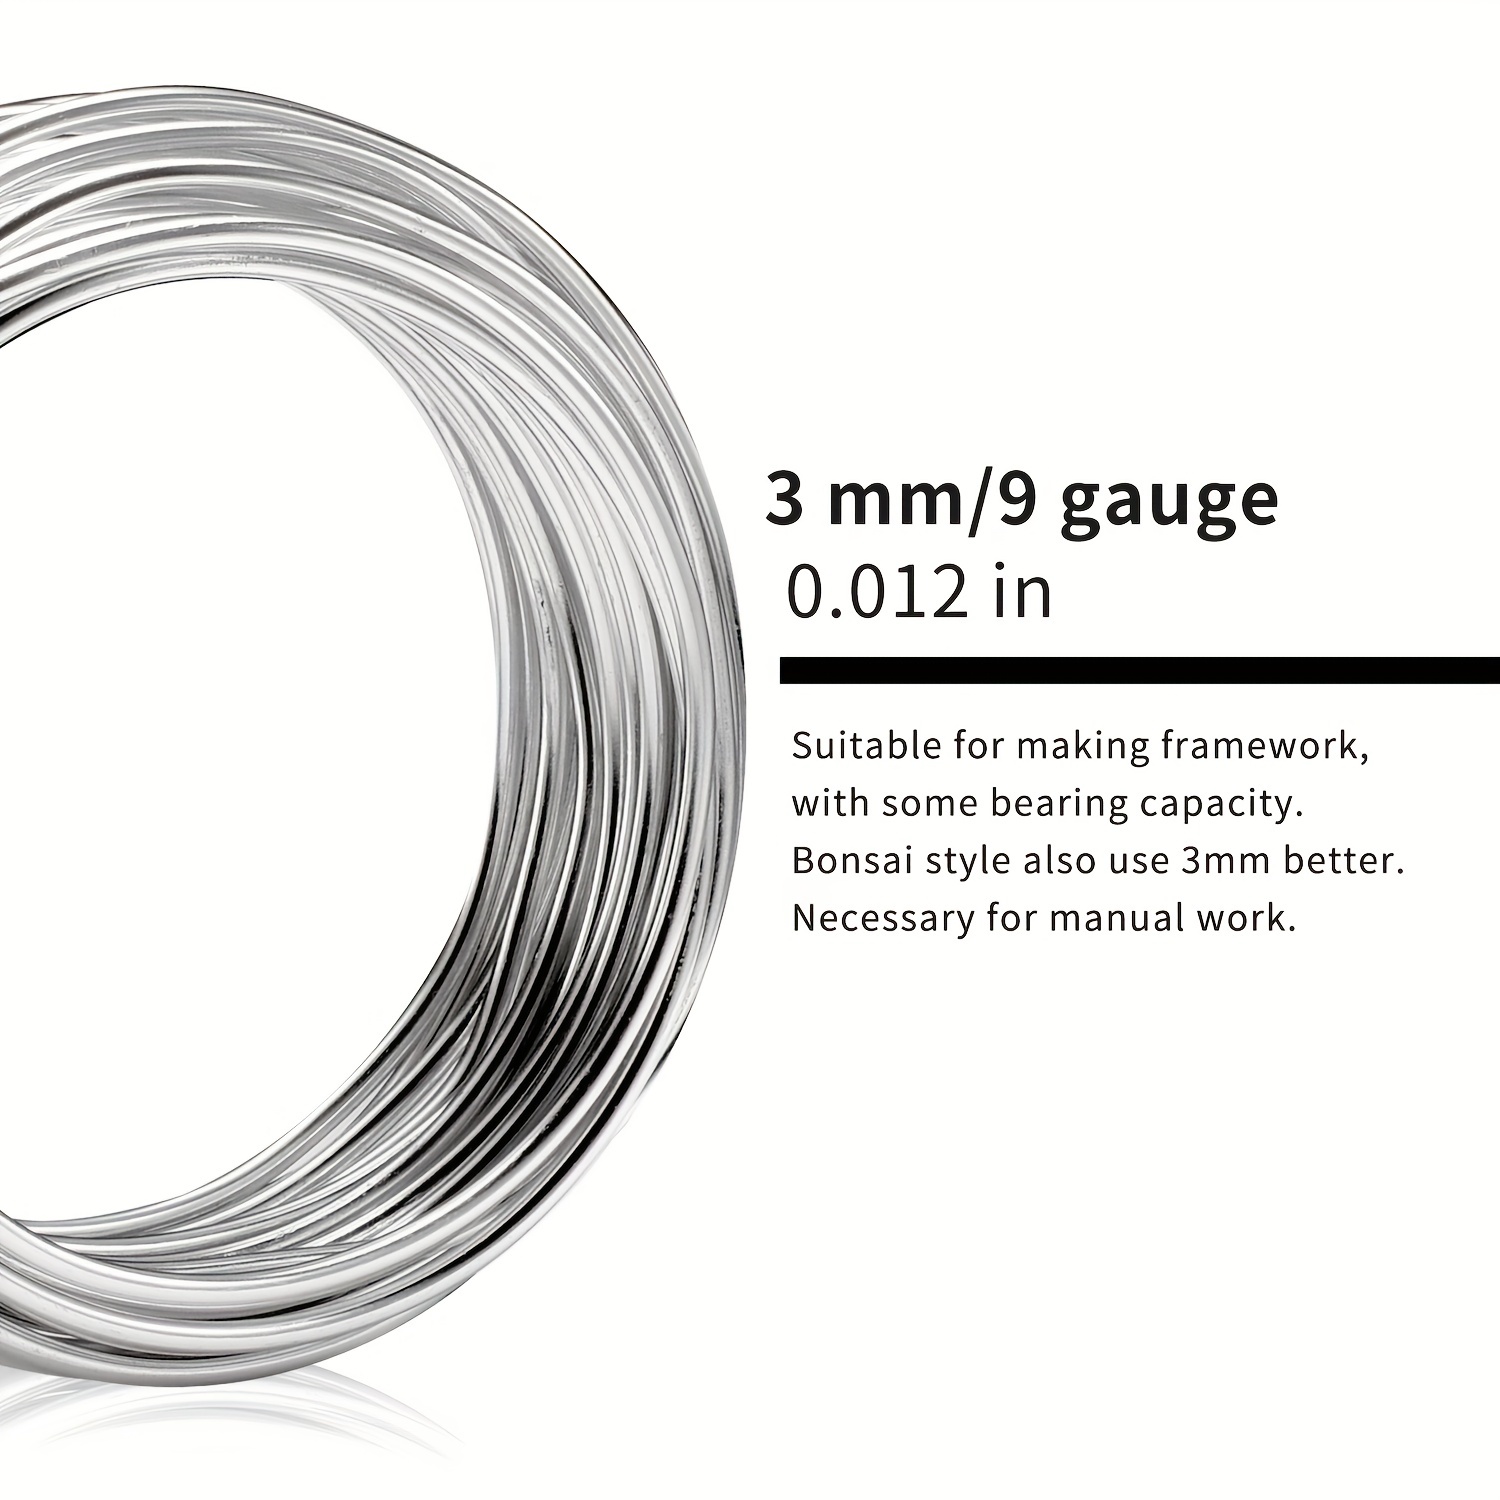 9 mõõtu hõbedane alumiiniumtraat – ideaalne ehete ja käsitöö jaoks – 32,8 jalga/10 m pikk